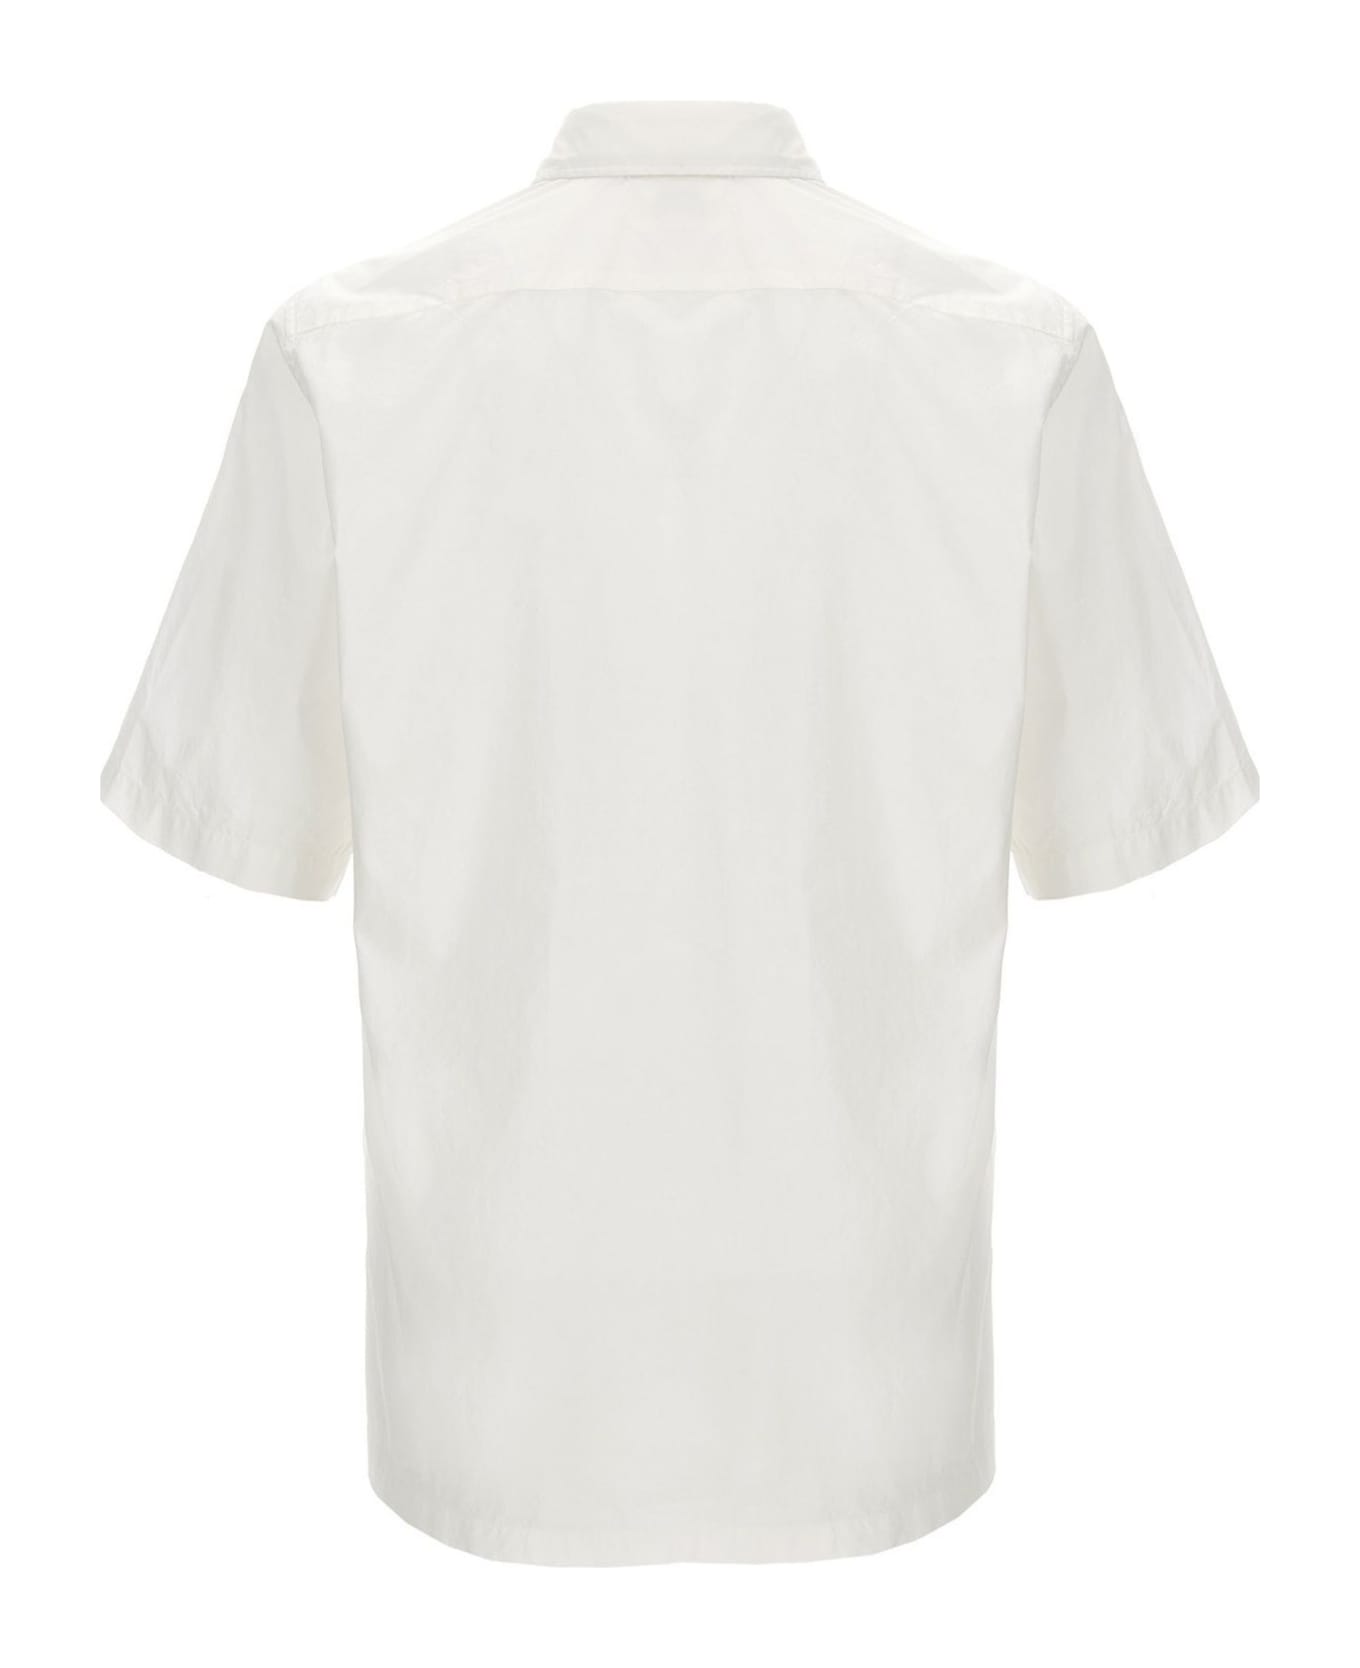 C.P. Company C.p.company Shirts White - White